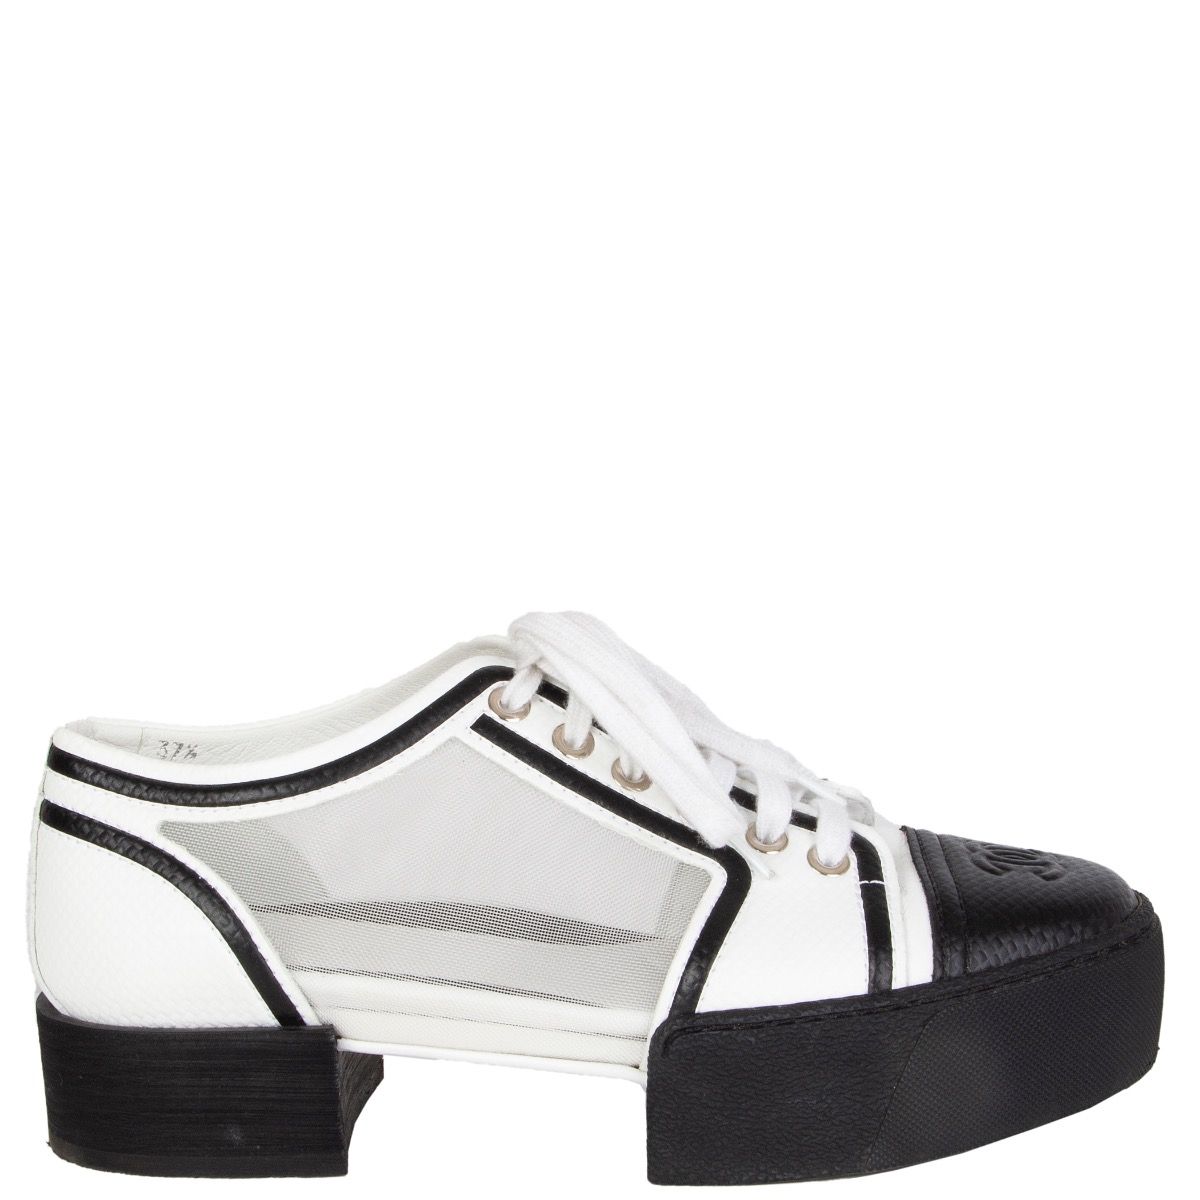 Chanel Canvas Platform Shoes Black White  Ordixicom